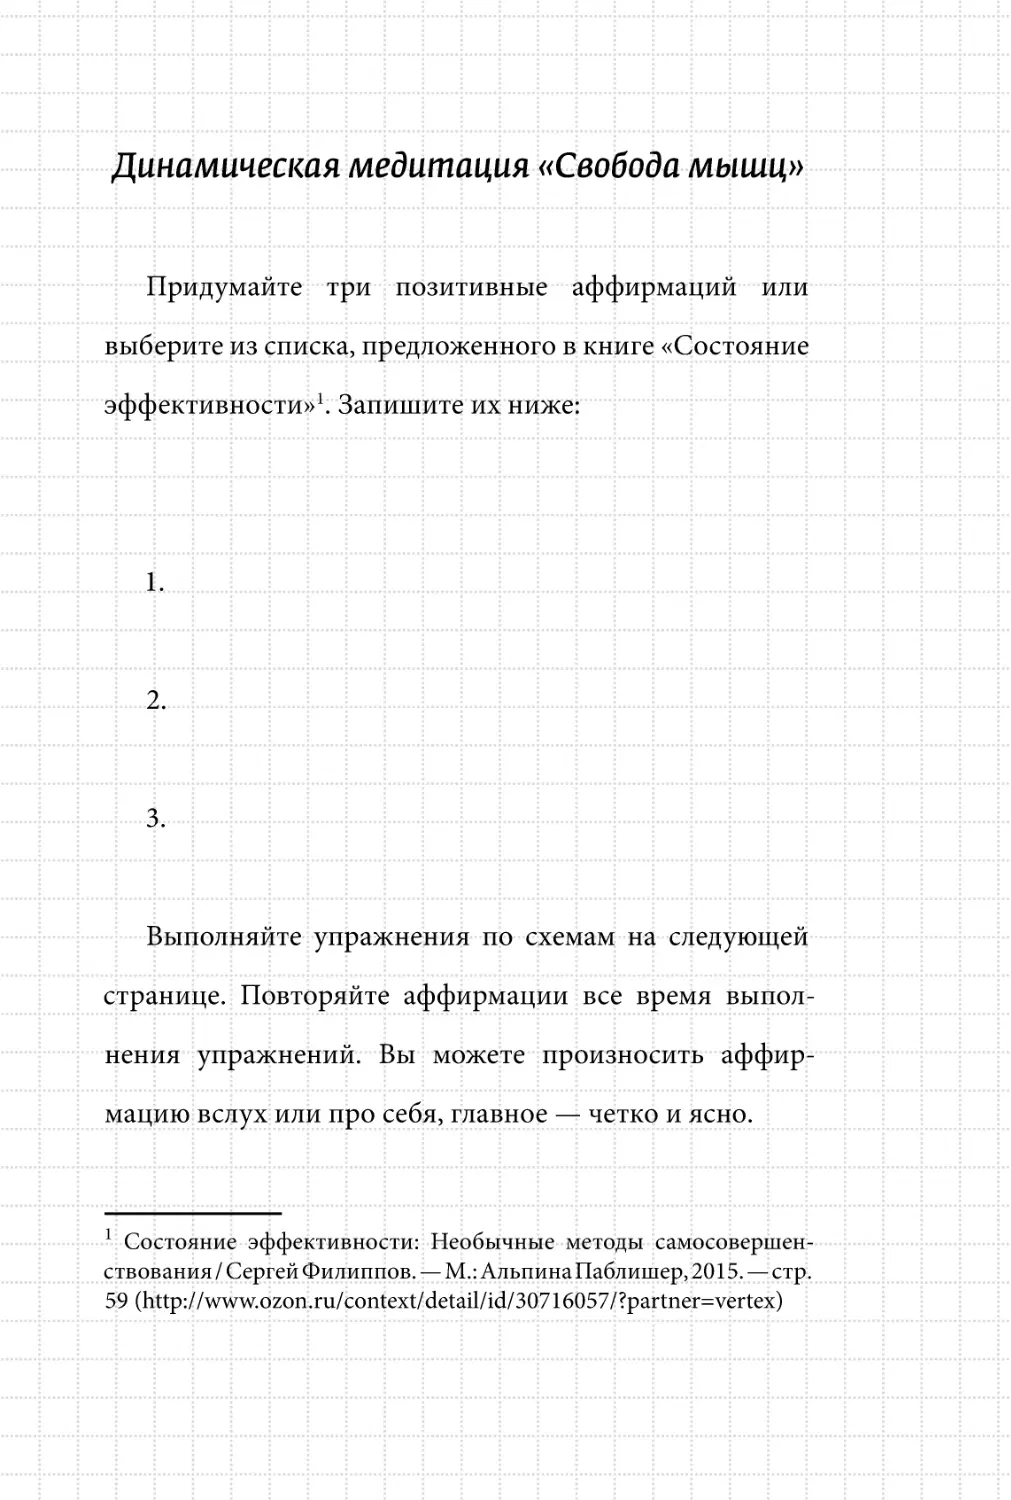 Sergey_Filippov_Dnevnik_samorazvitia_Evolyutsia_Vnutrennego_Sostoyania_59.pdf (p.59)